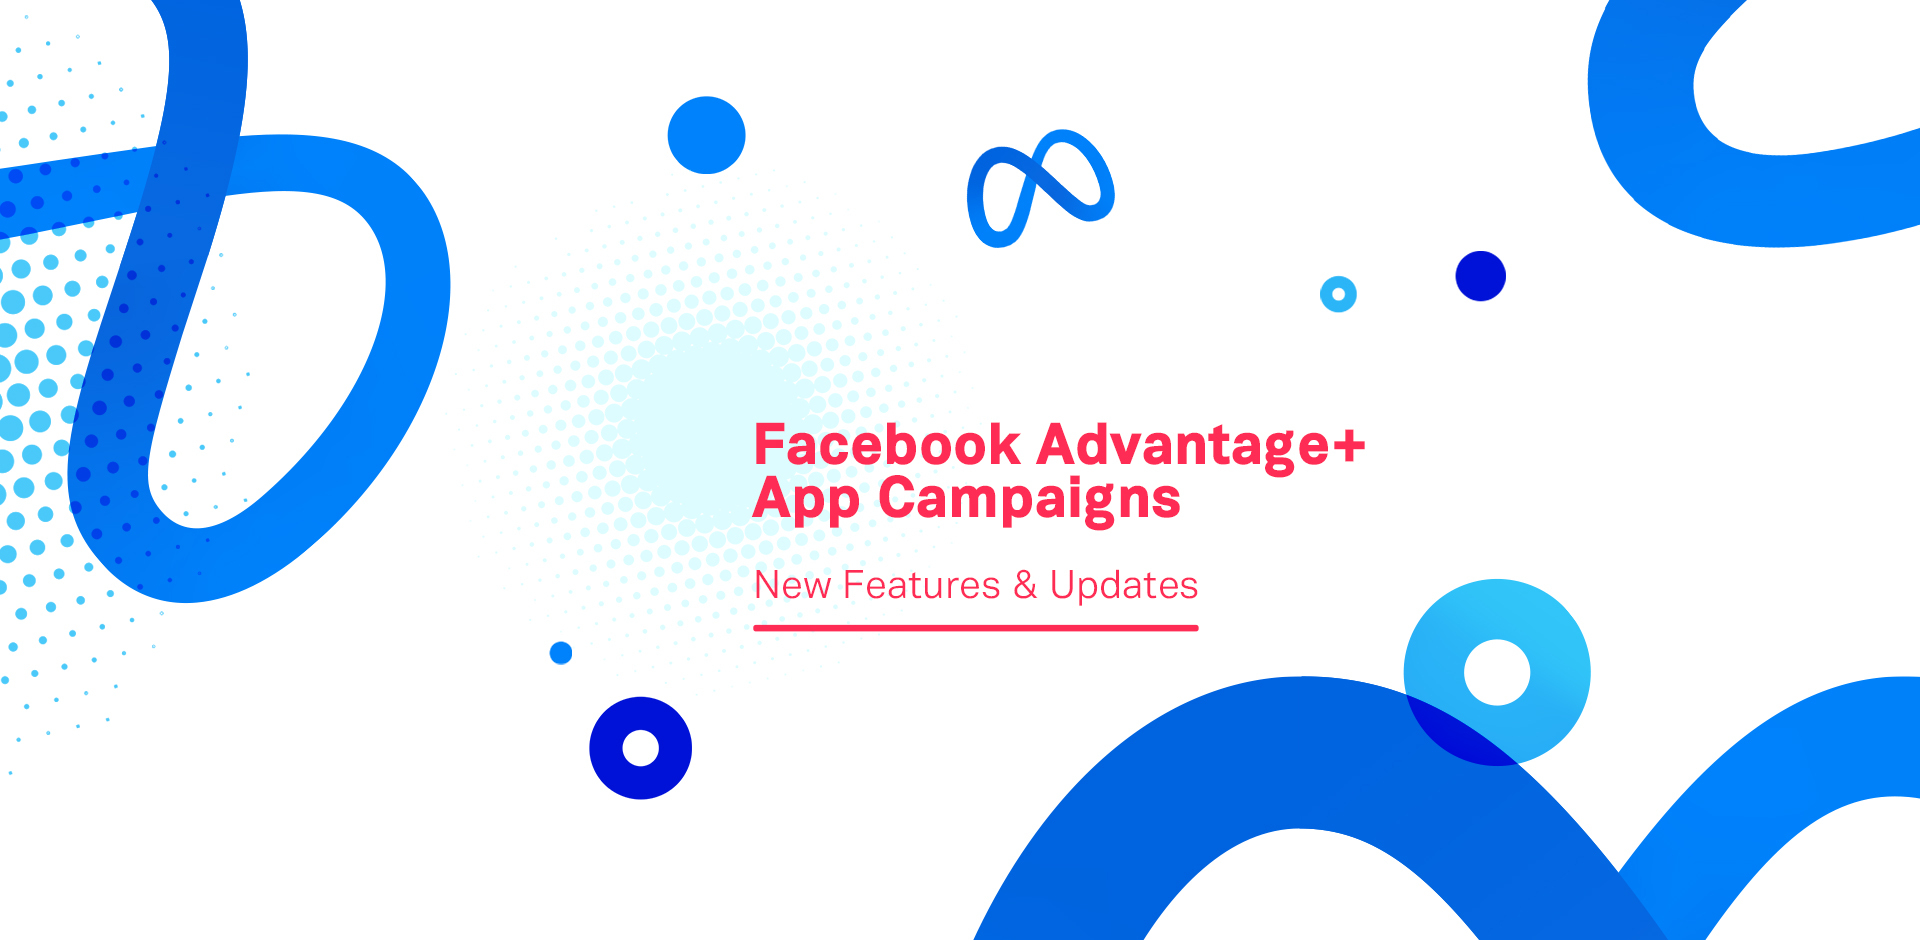 Facebook Advantage+ App Campaigns